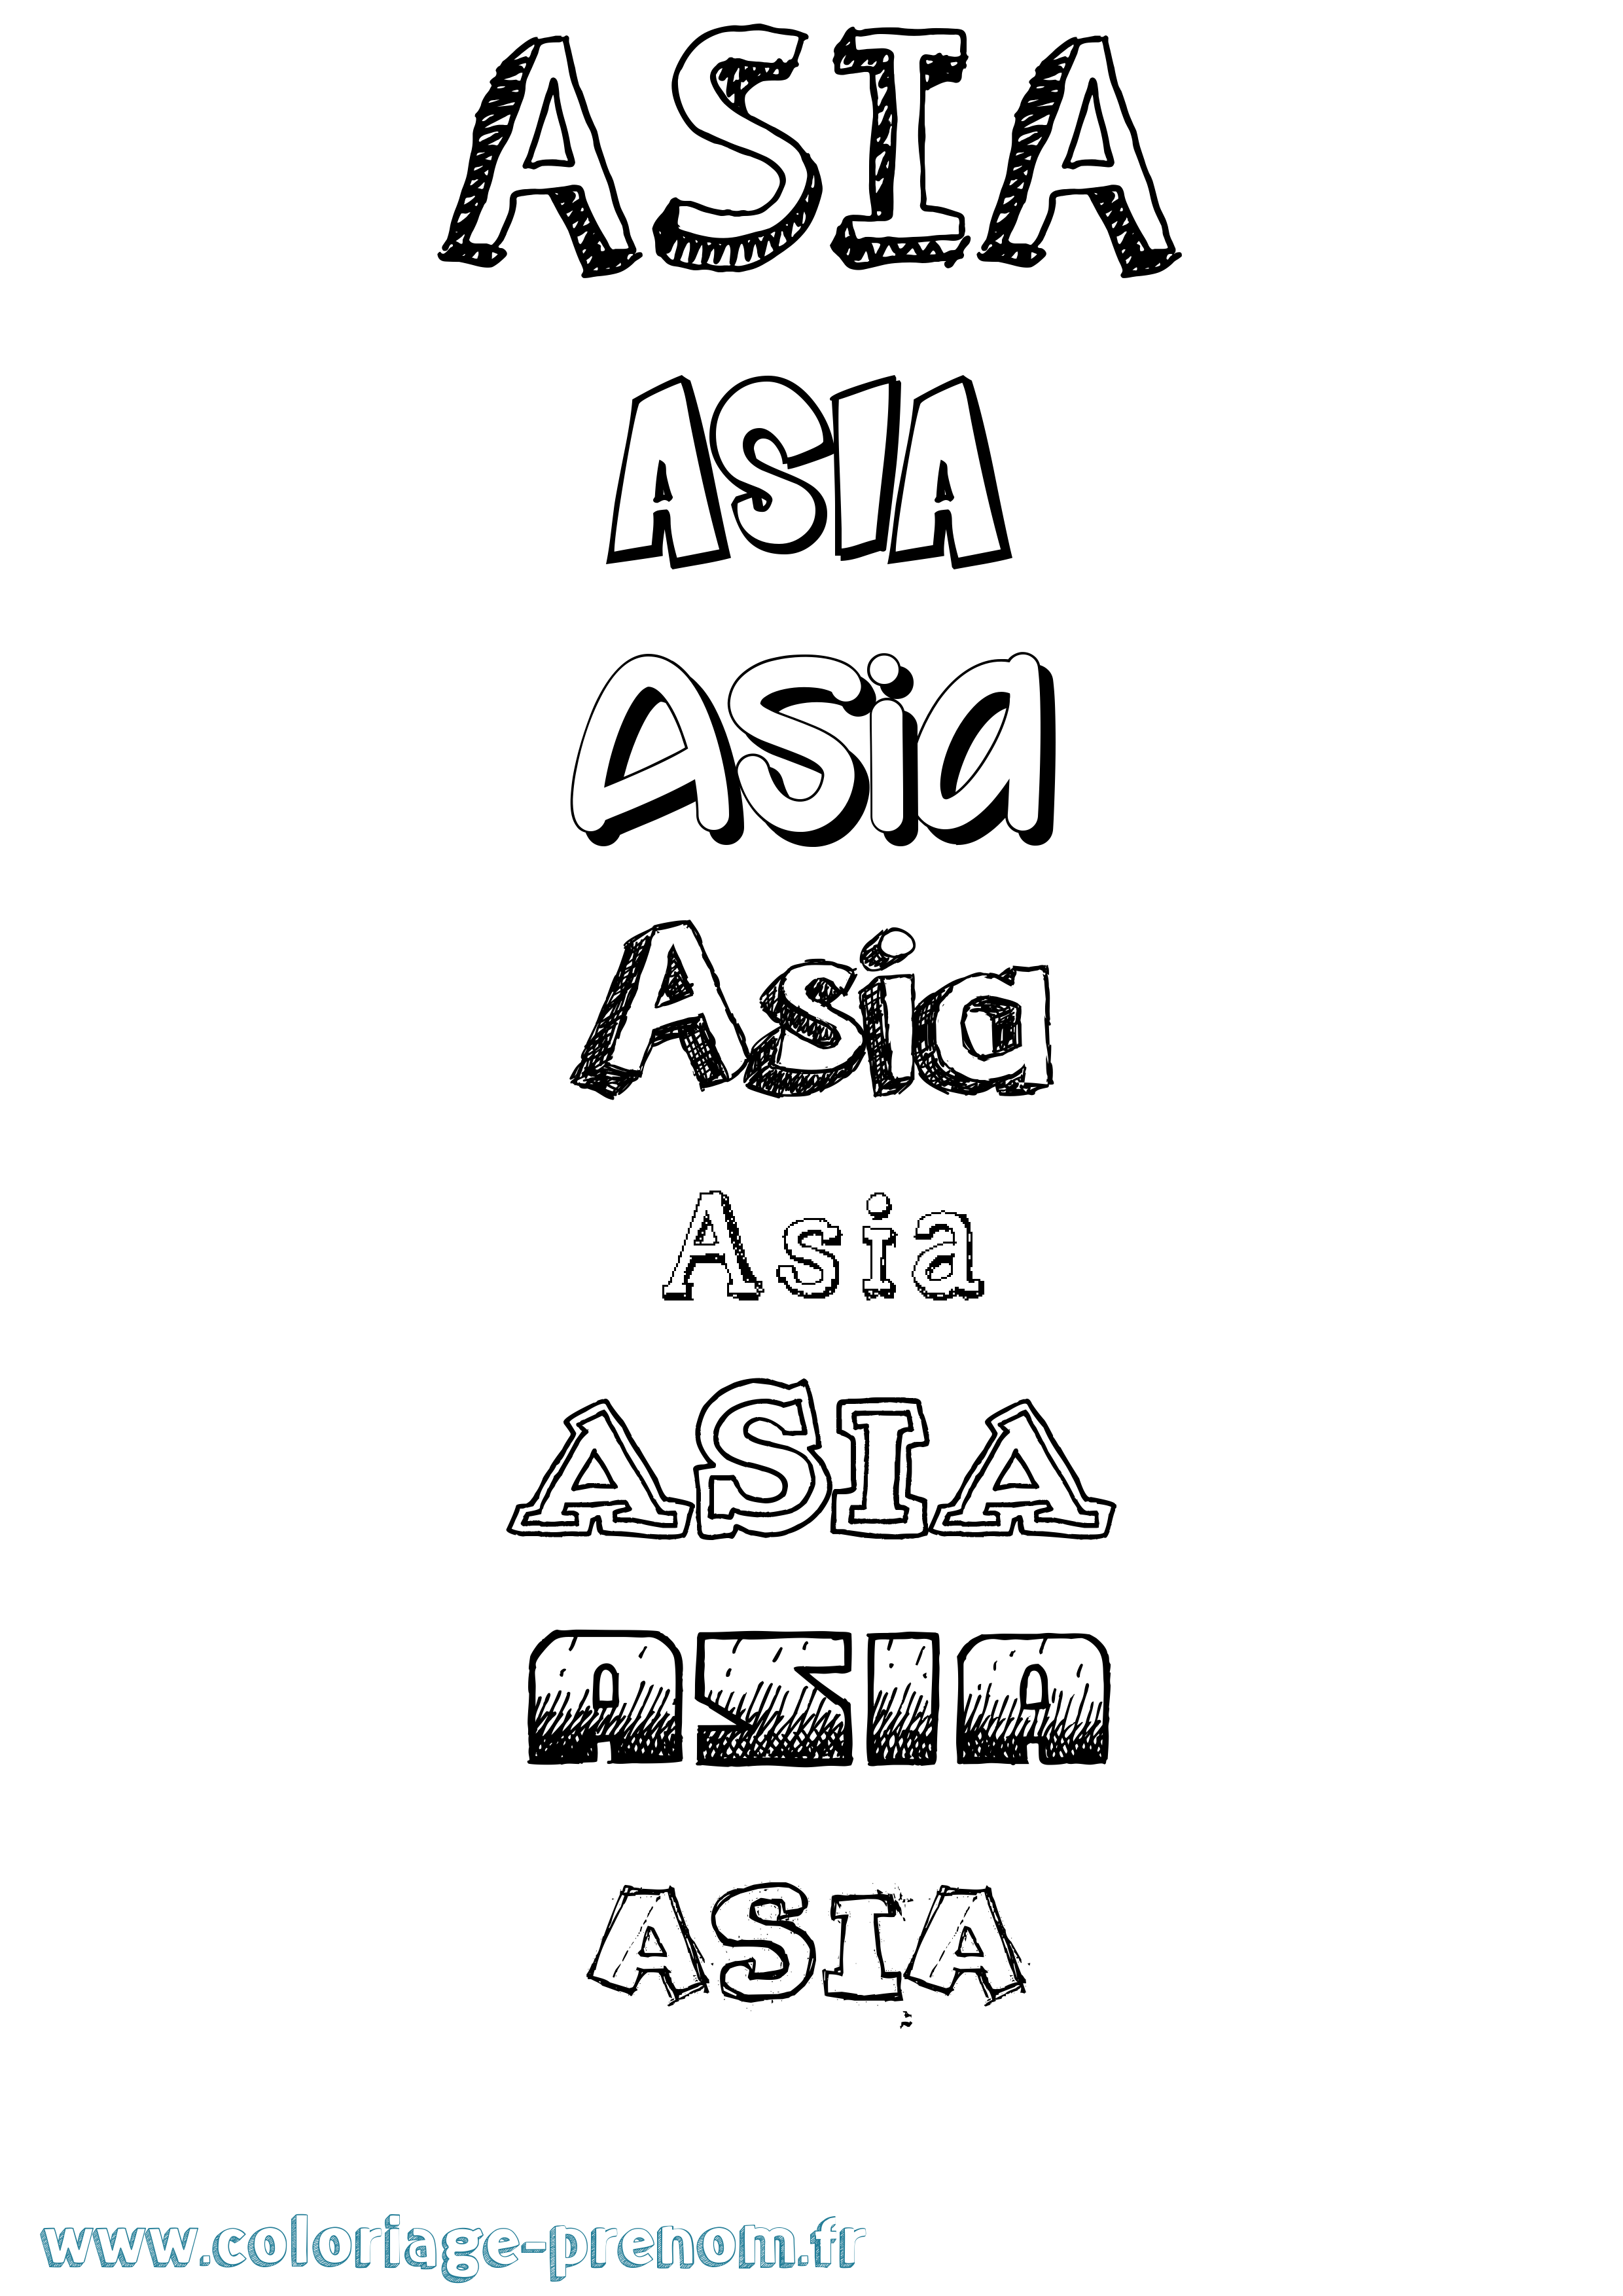 Coloriage prénom Asia Dessiné